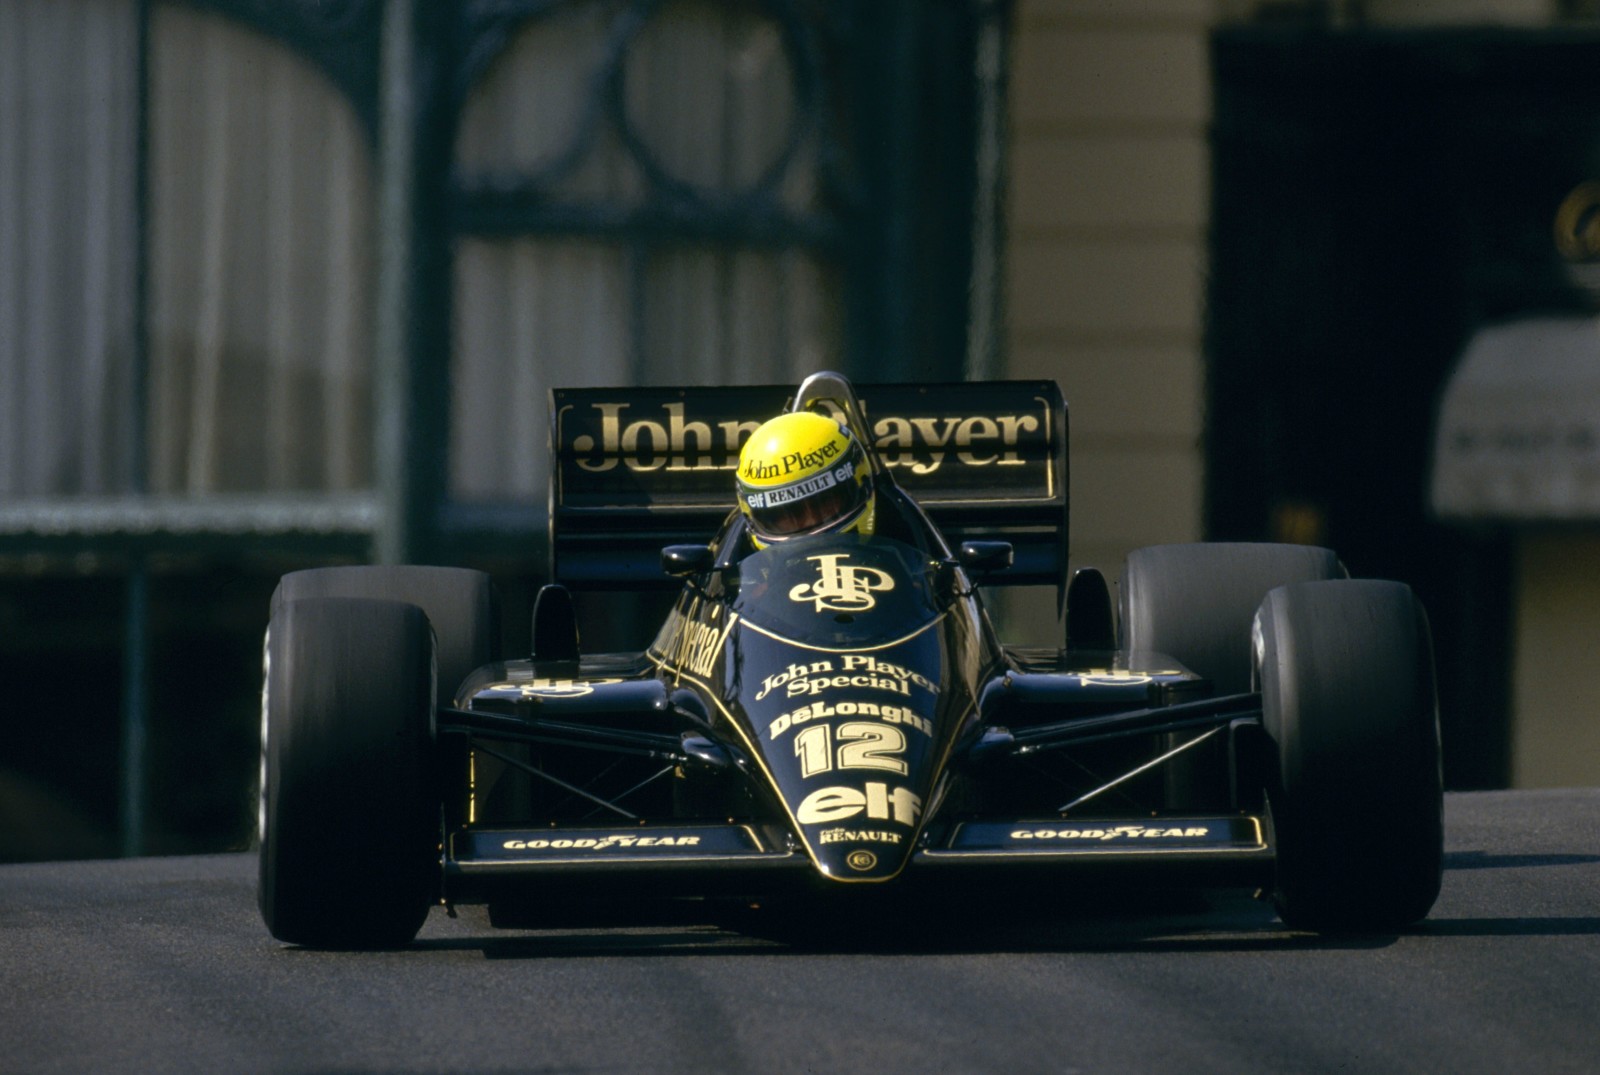 ตำนาน, แม็คลาเรน, บัว, สูตร 1, 1990, 1994, 1988, Ayrton Senna